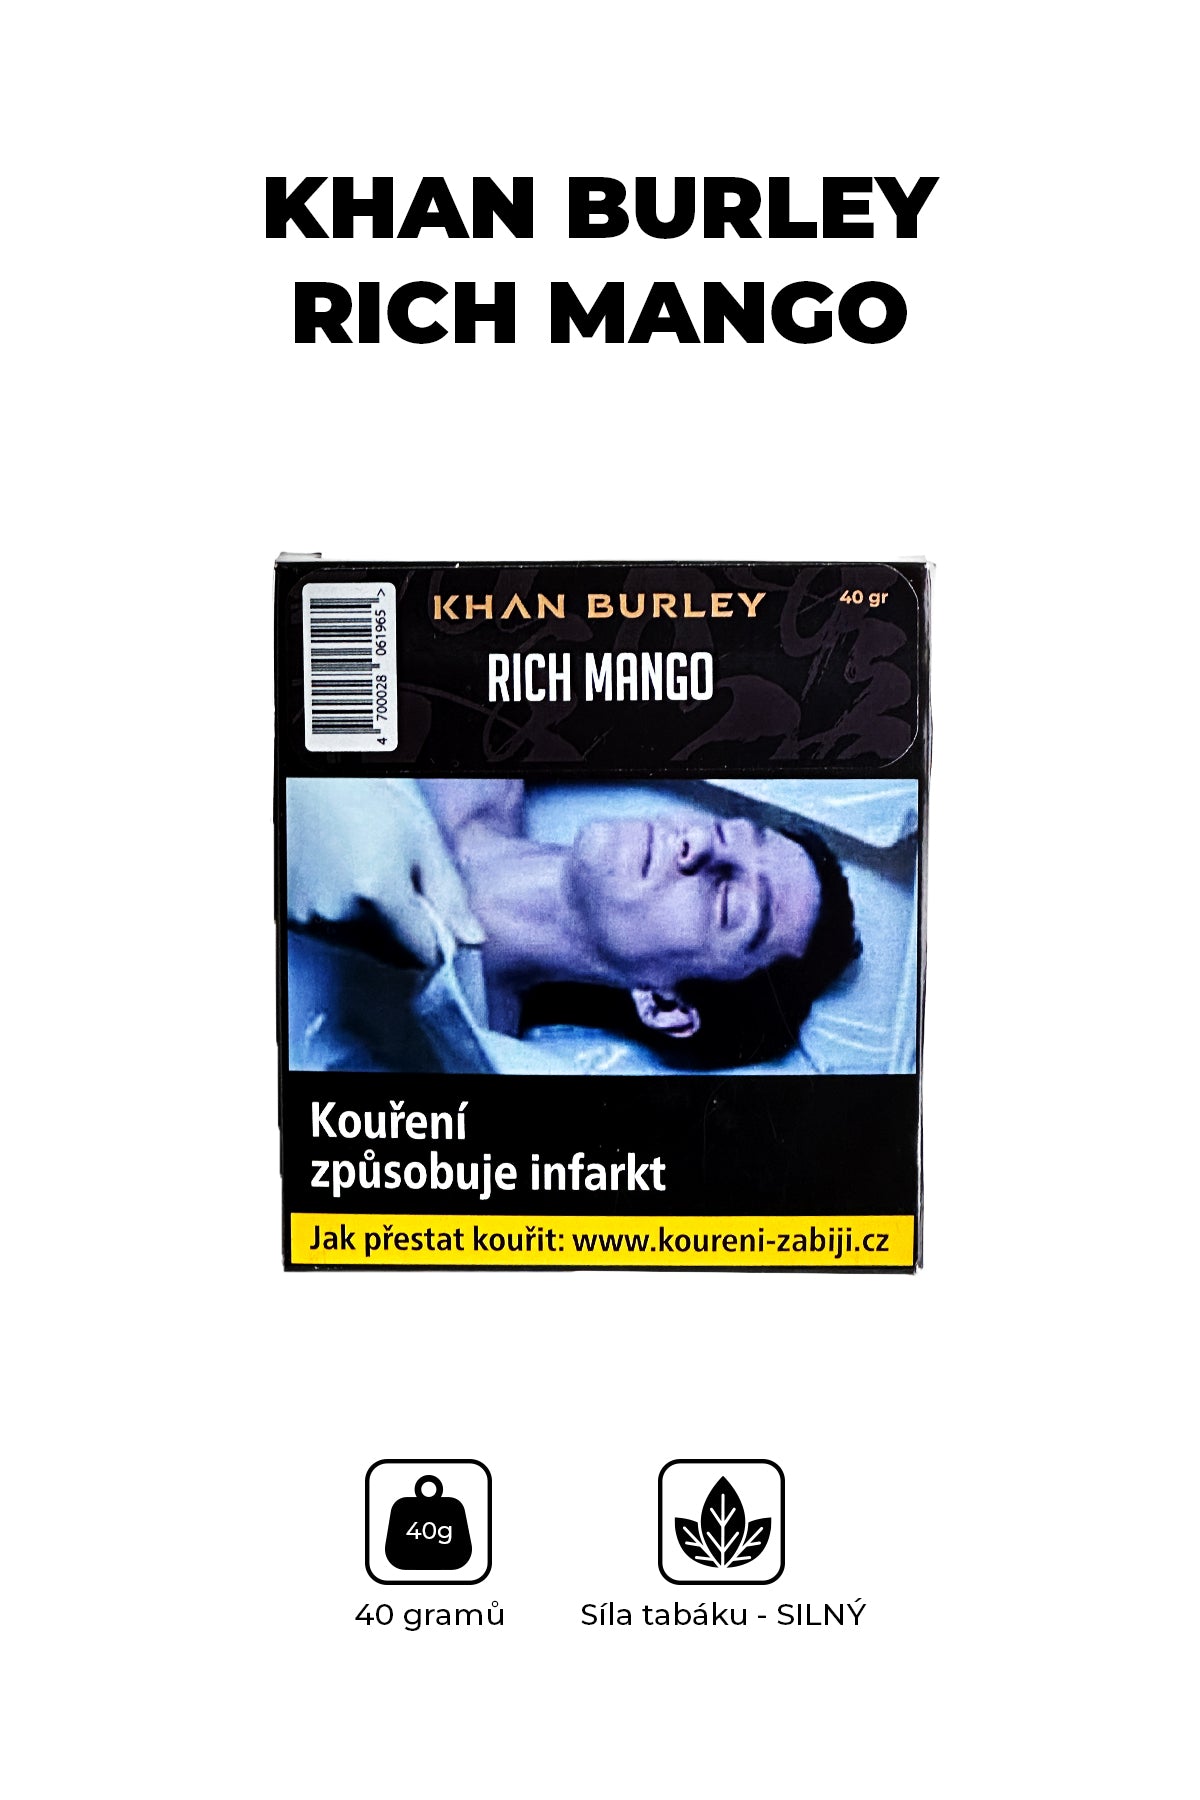 Tabák - Khan Burley 40g - Rich Mango